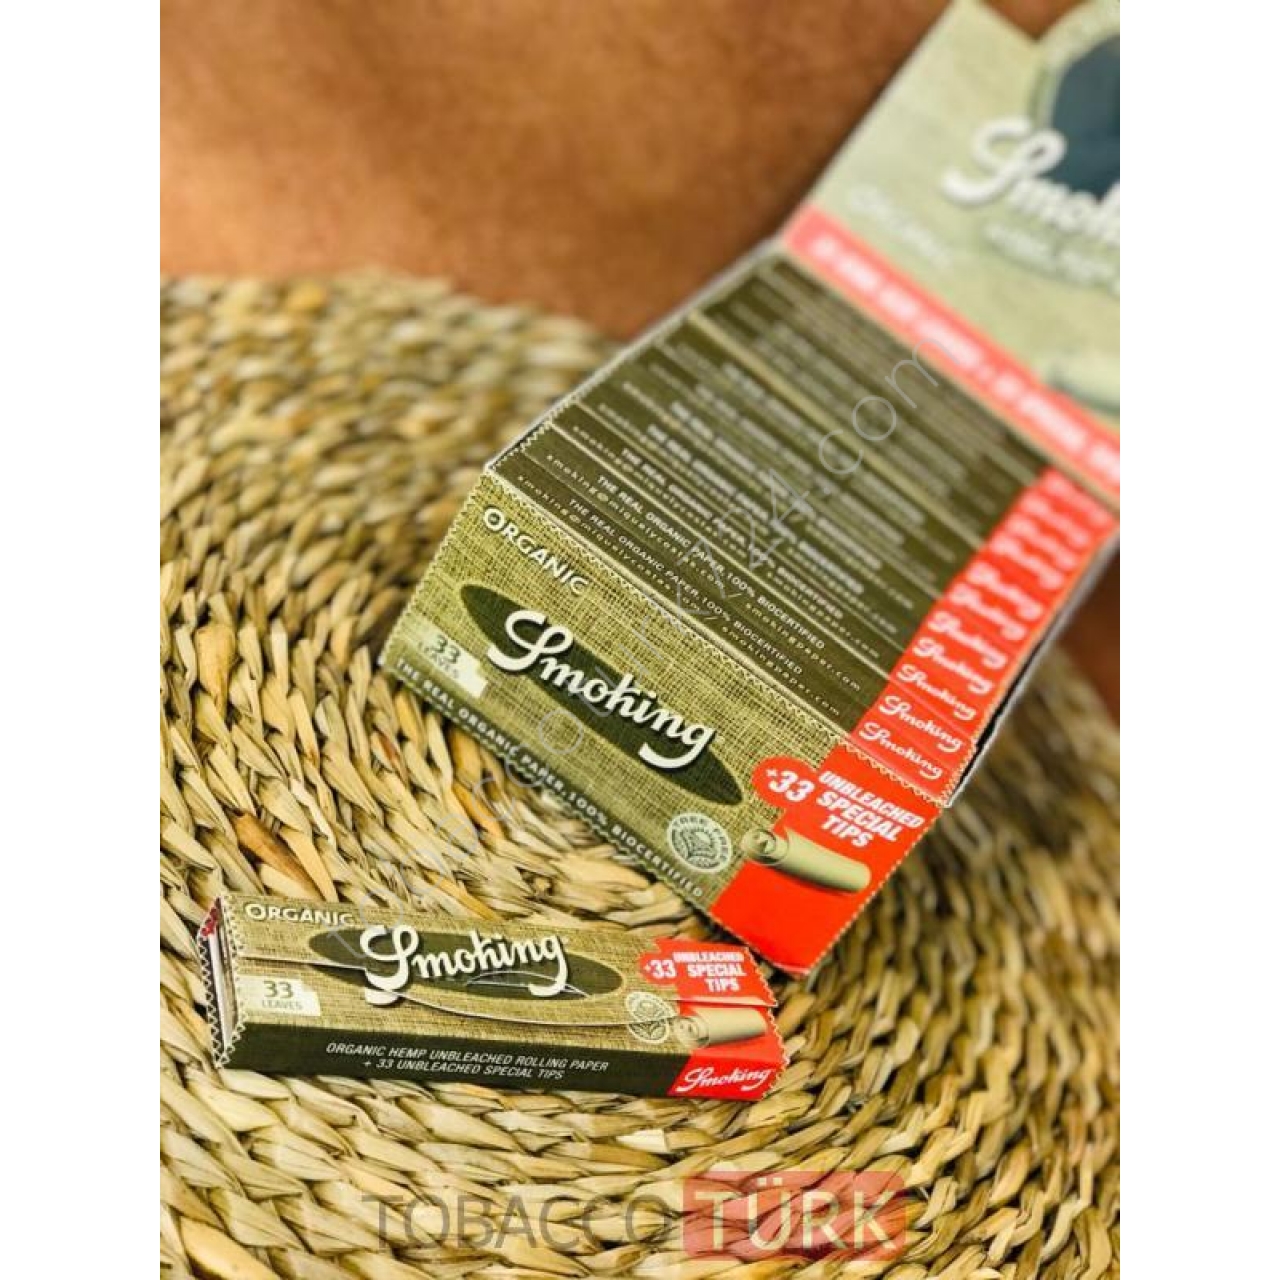 Smoking Zıvanalı Organic Tütün Sarma Kağıdı Orjinal Ürün